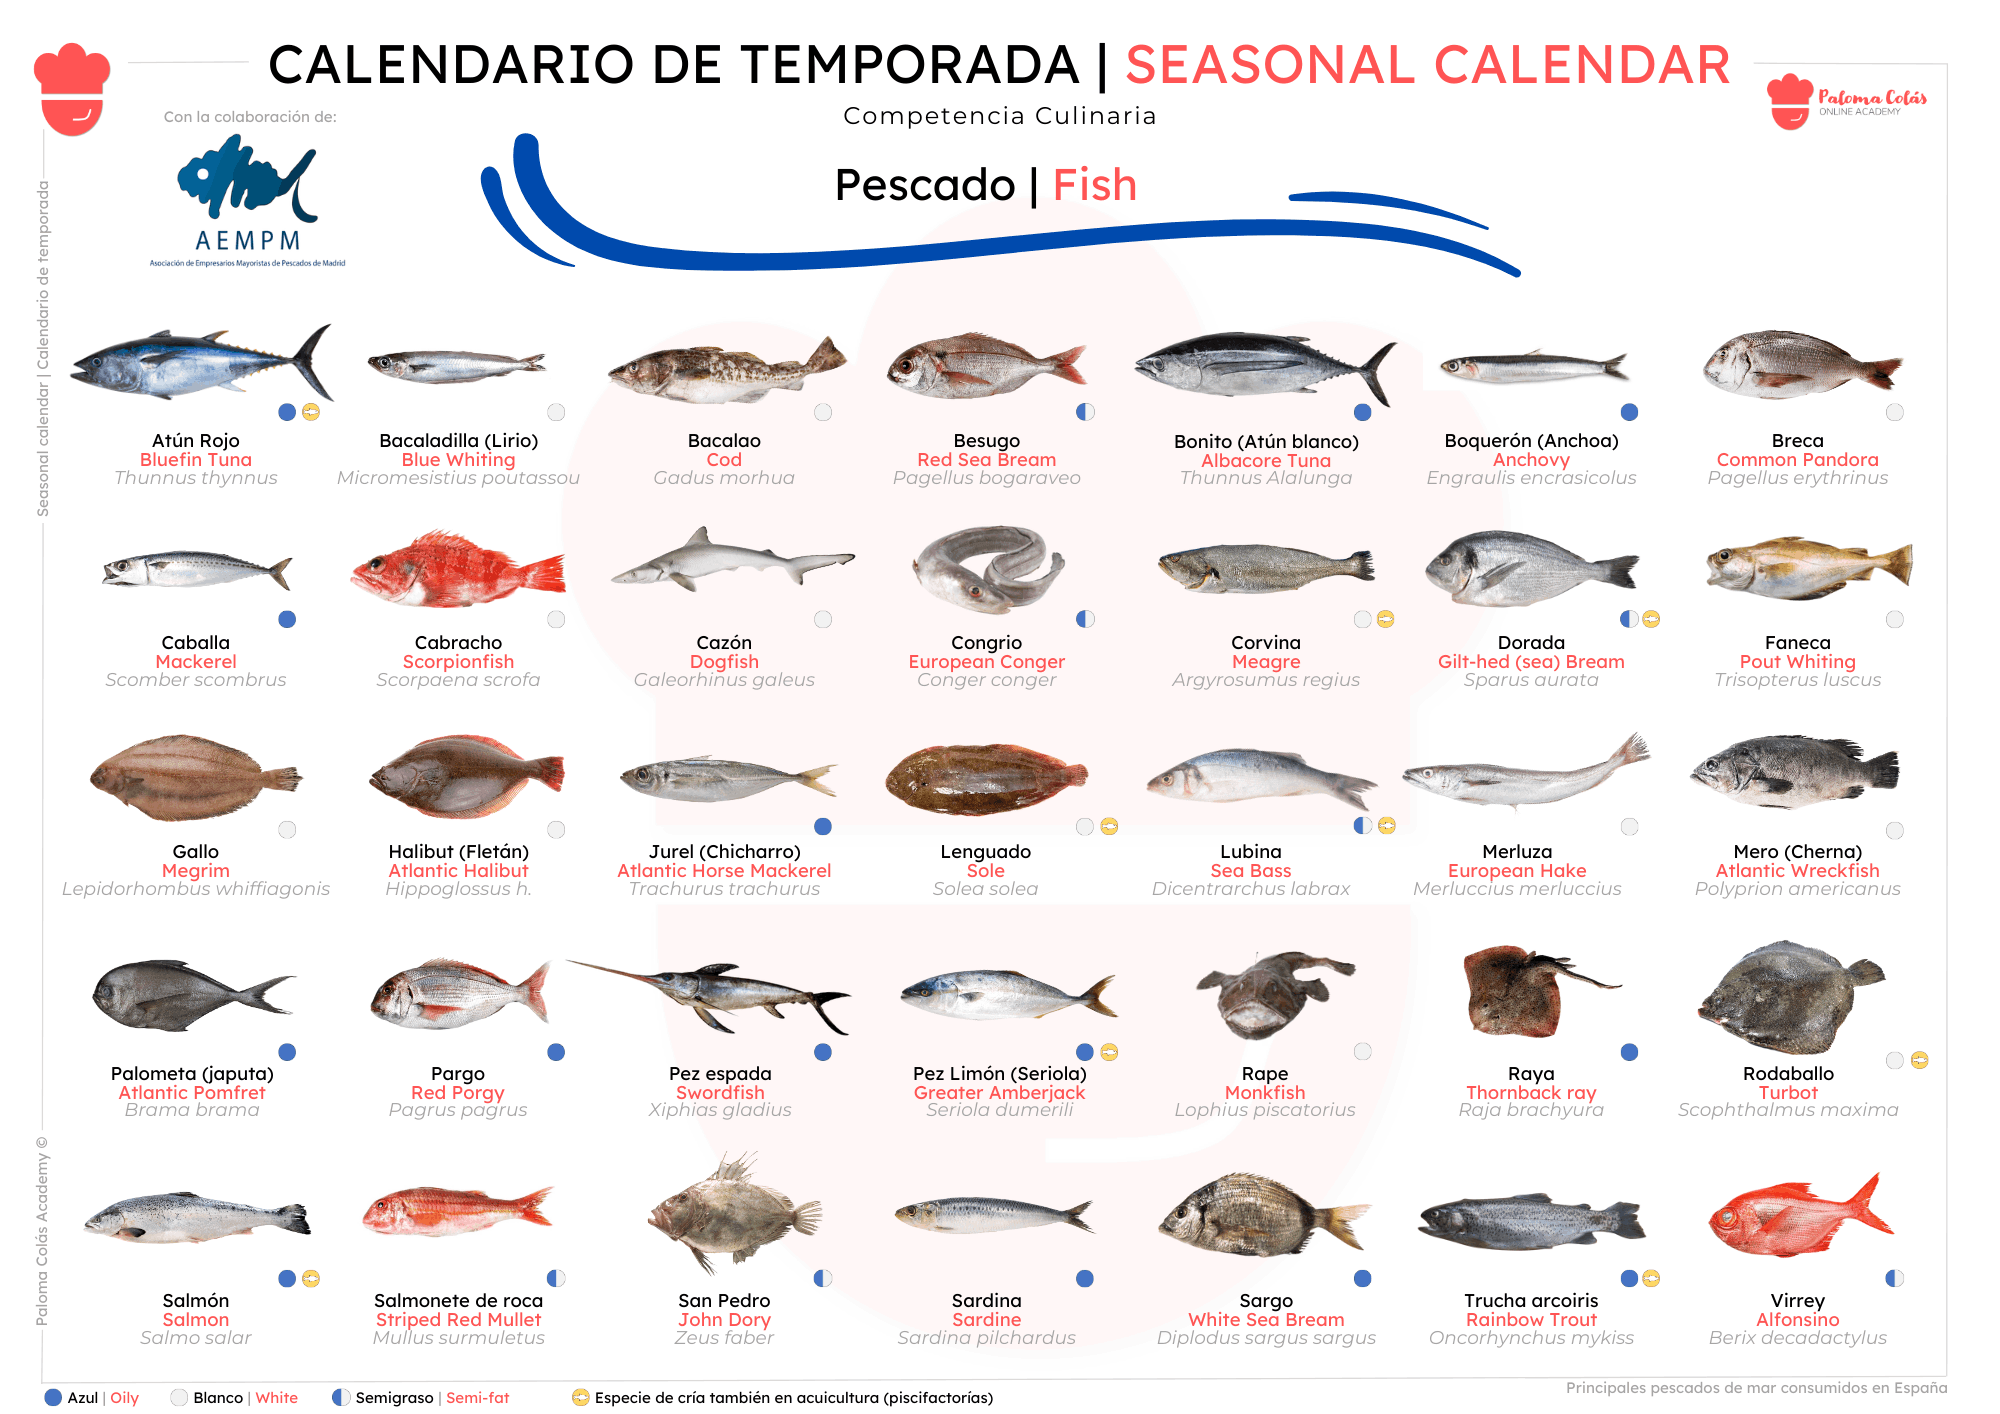 Calendario de Temporada de Pescados - Paloma Colás Academy (portada)